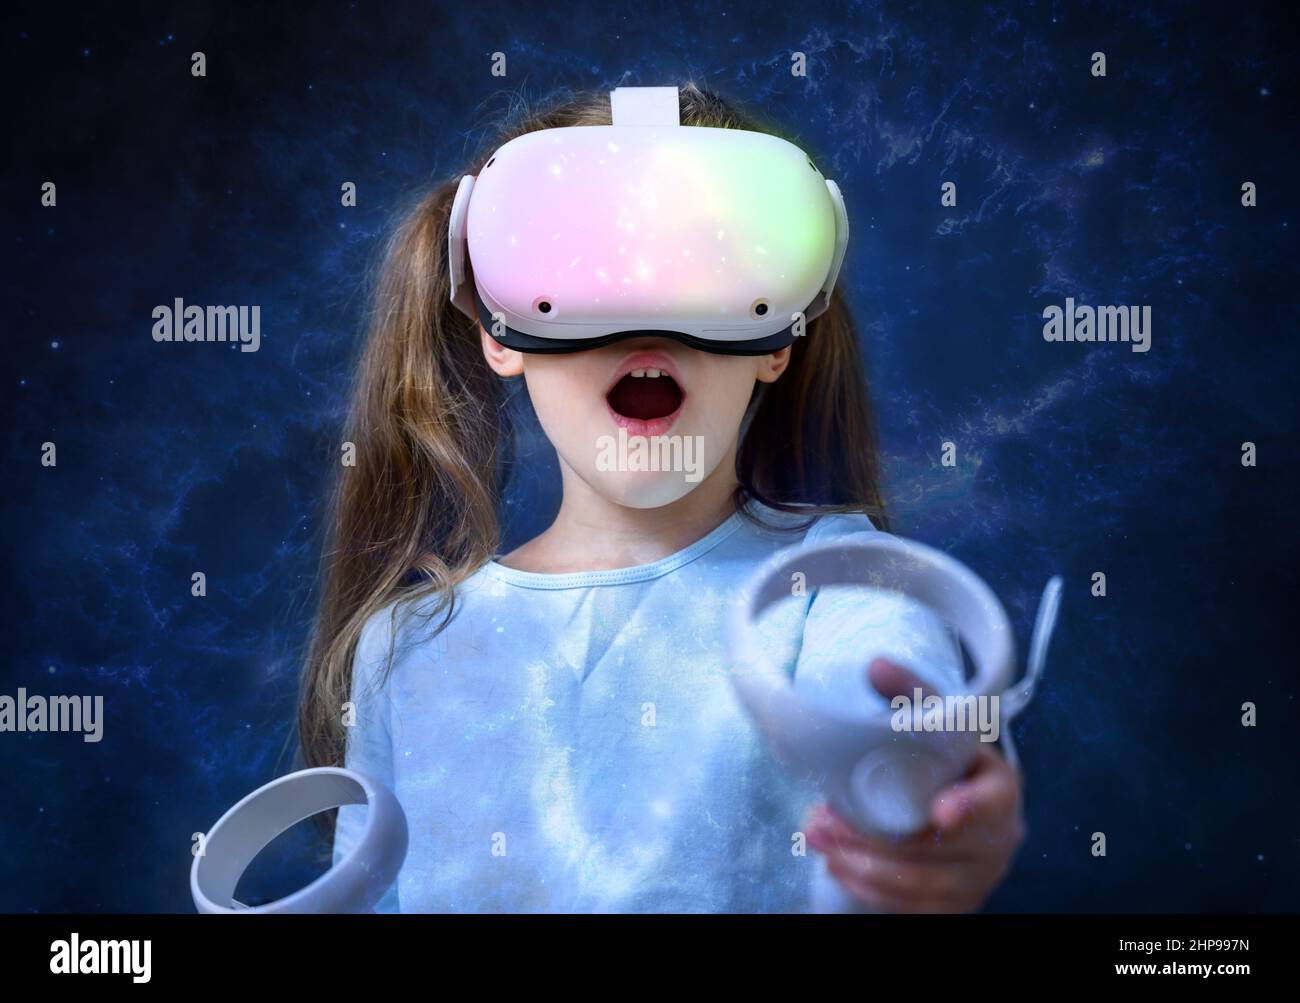 Enfant utilisant un casque de réalité virtuelle, enfant mignon regardant dans des lunettes VR. Jeune personne avec des lunettes futuristes ayant l'amusement, petite fille jouant aux jeux vidéo. Banque D'Images